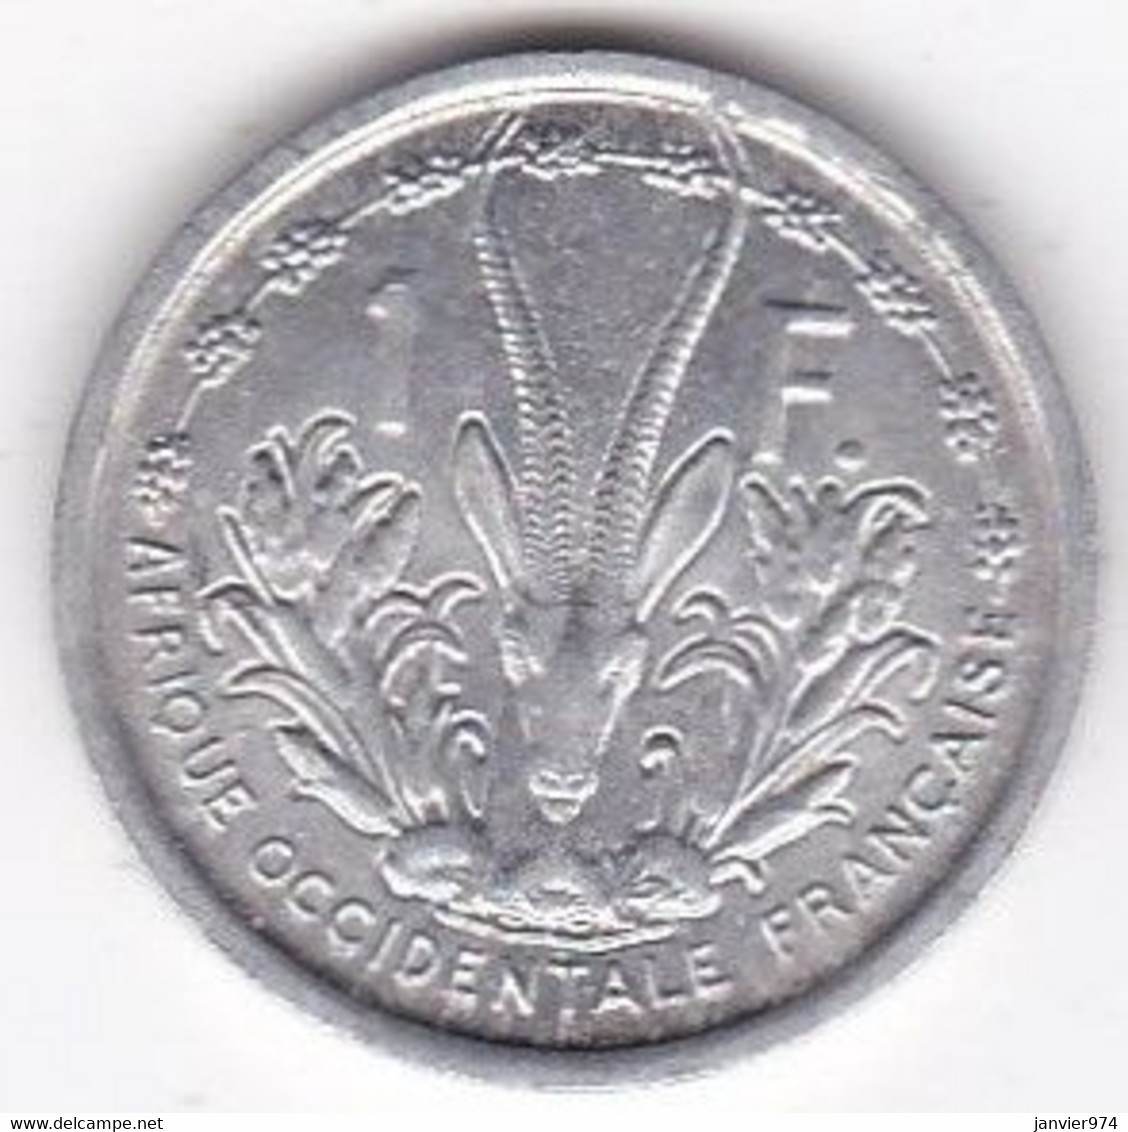 A.O.F. Union Française  1 Franc 1948 , Aluminium, LEC# 6 , KM# 3 - Afrique Occidentale Française